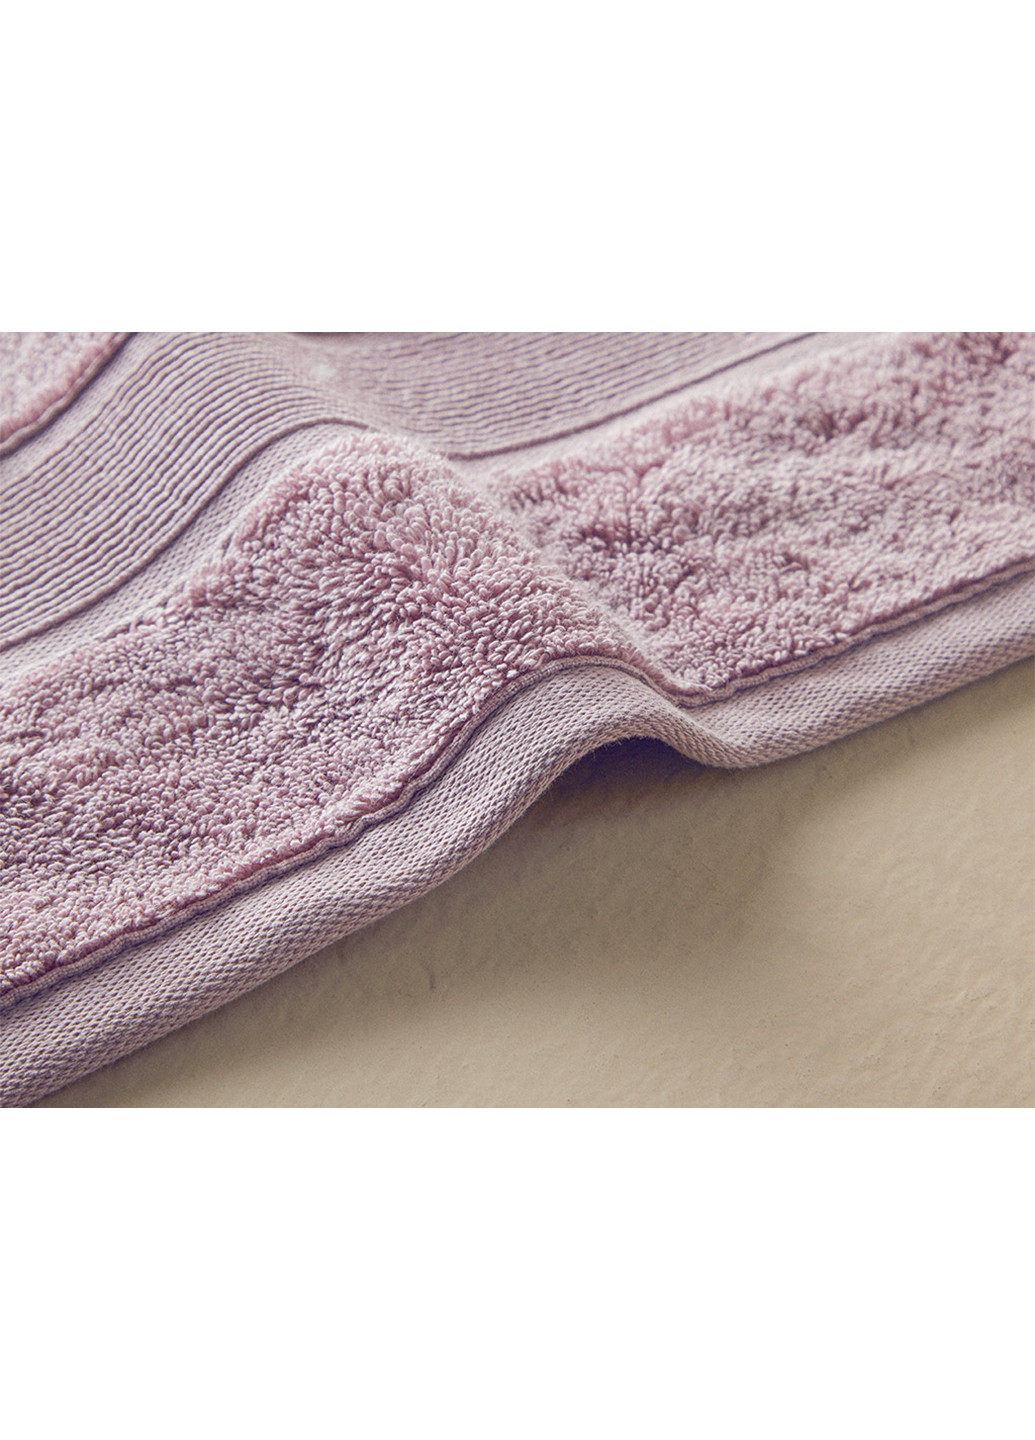 English Home полотенце для лица, 50х80 см однотонный лиловый производство - Турция